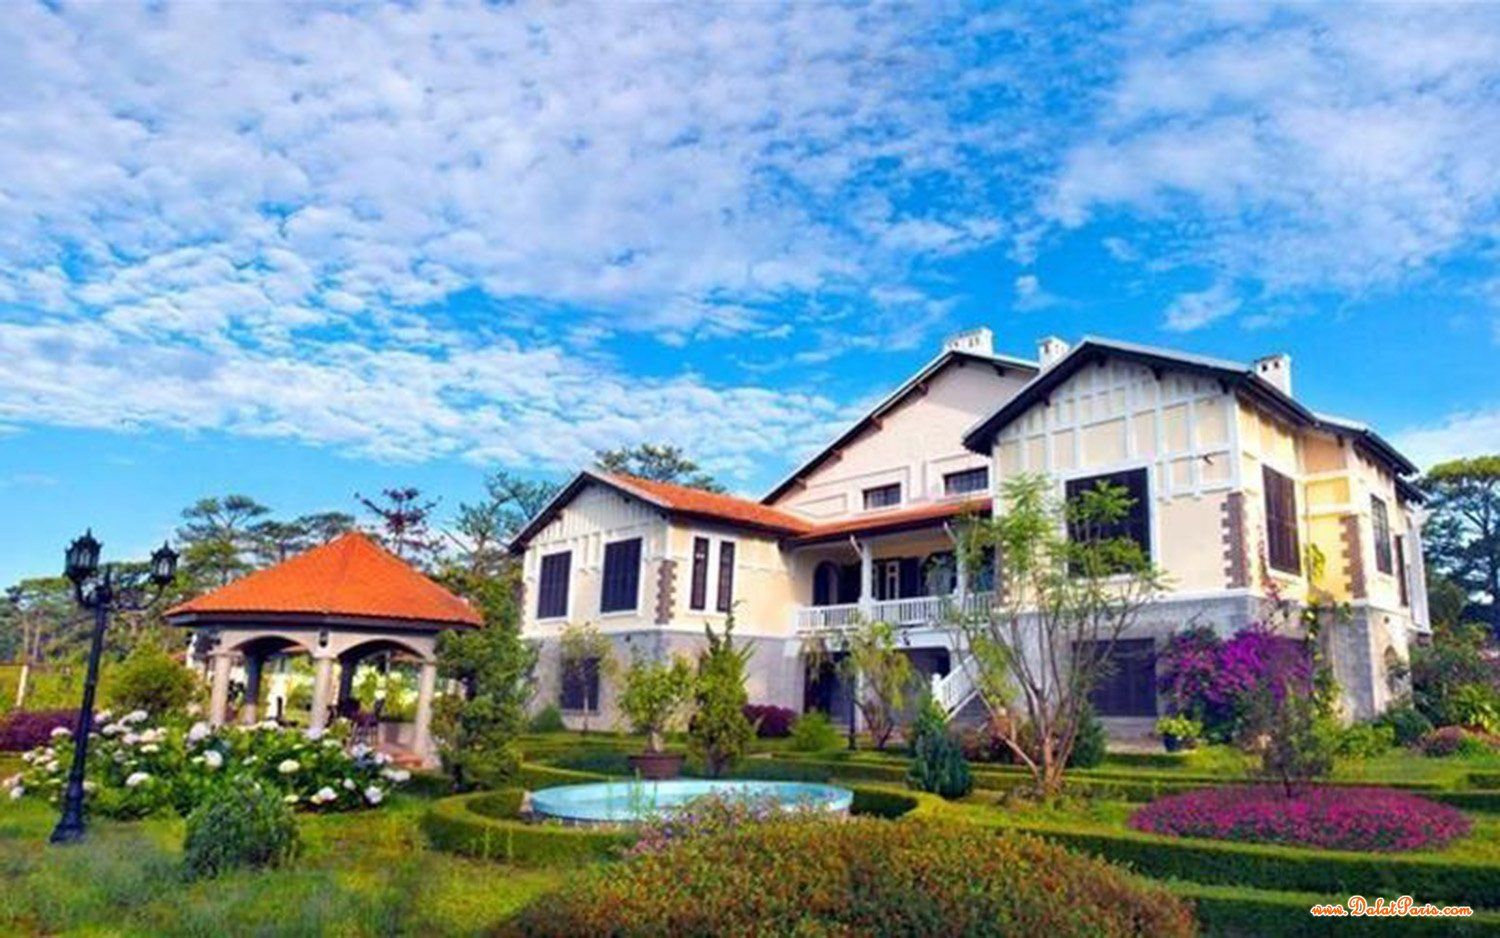 Đất biệt thự, khách sạn biệt thự trên 1200m2 mặt tiền đường Nguyễn Công Trứ, gần Trường Đại học Đà Lạt, cách Hồ Xuân Hương & Chợ Đà Lạt hơn  2km, giá đầu tư tốt chỉ 148 tỷ